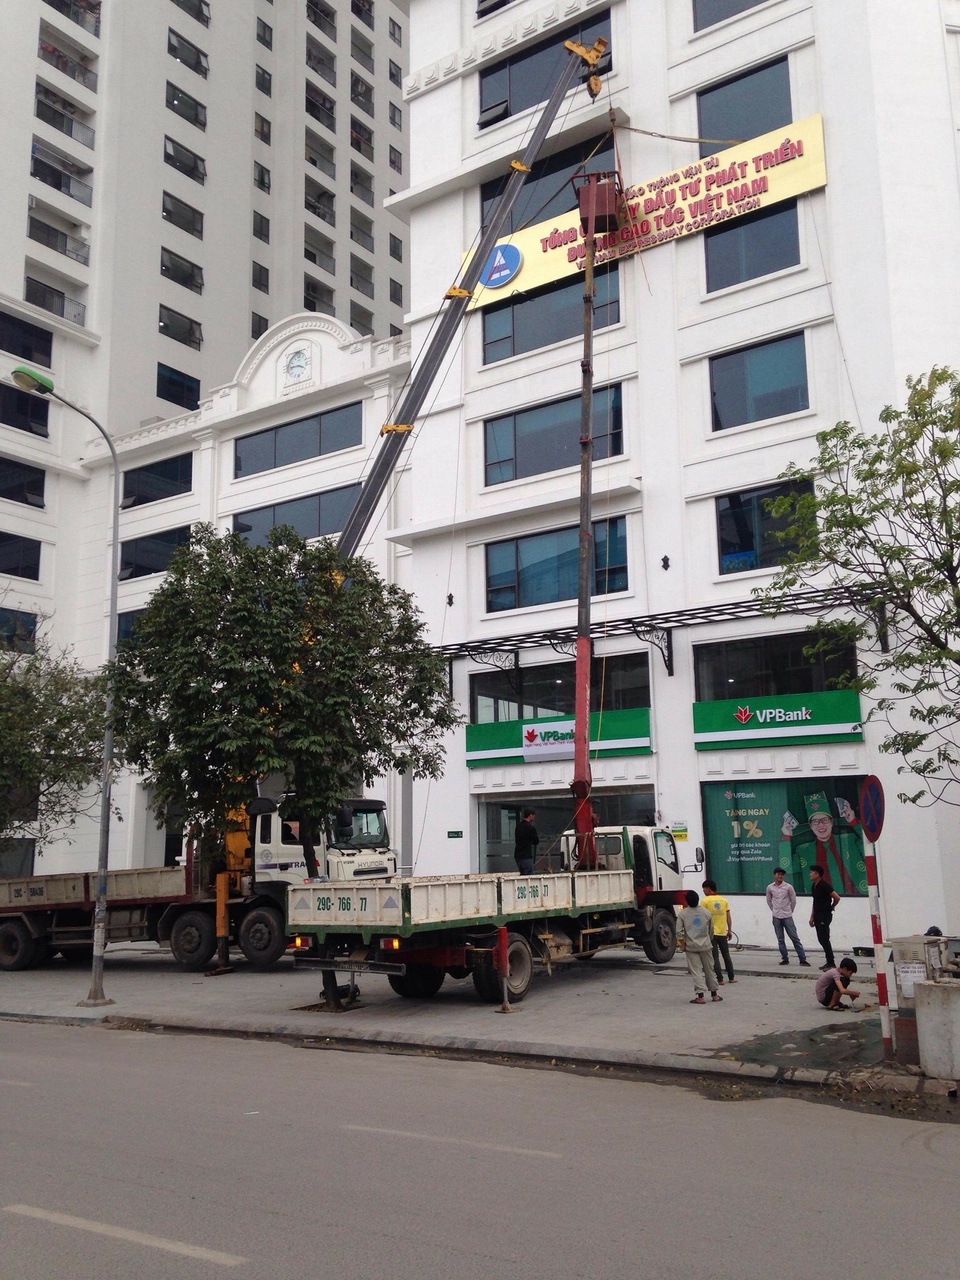 Chuyên cho thuê xe tải cẩu tại Hà Nội